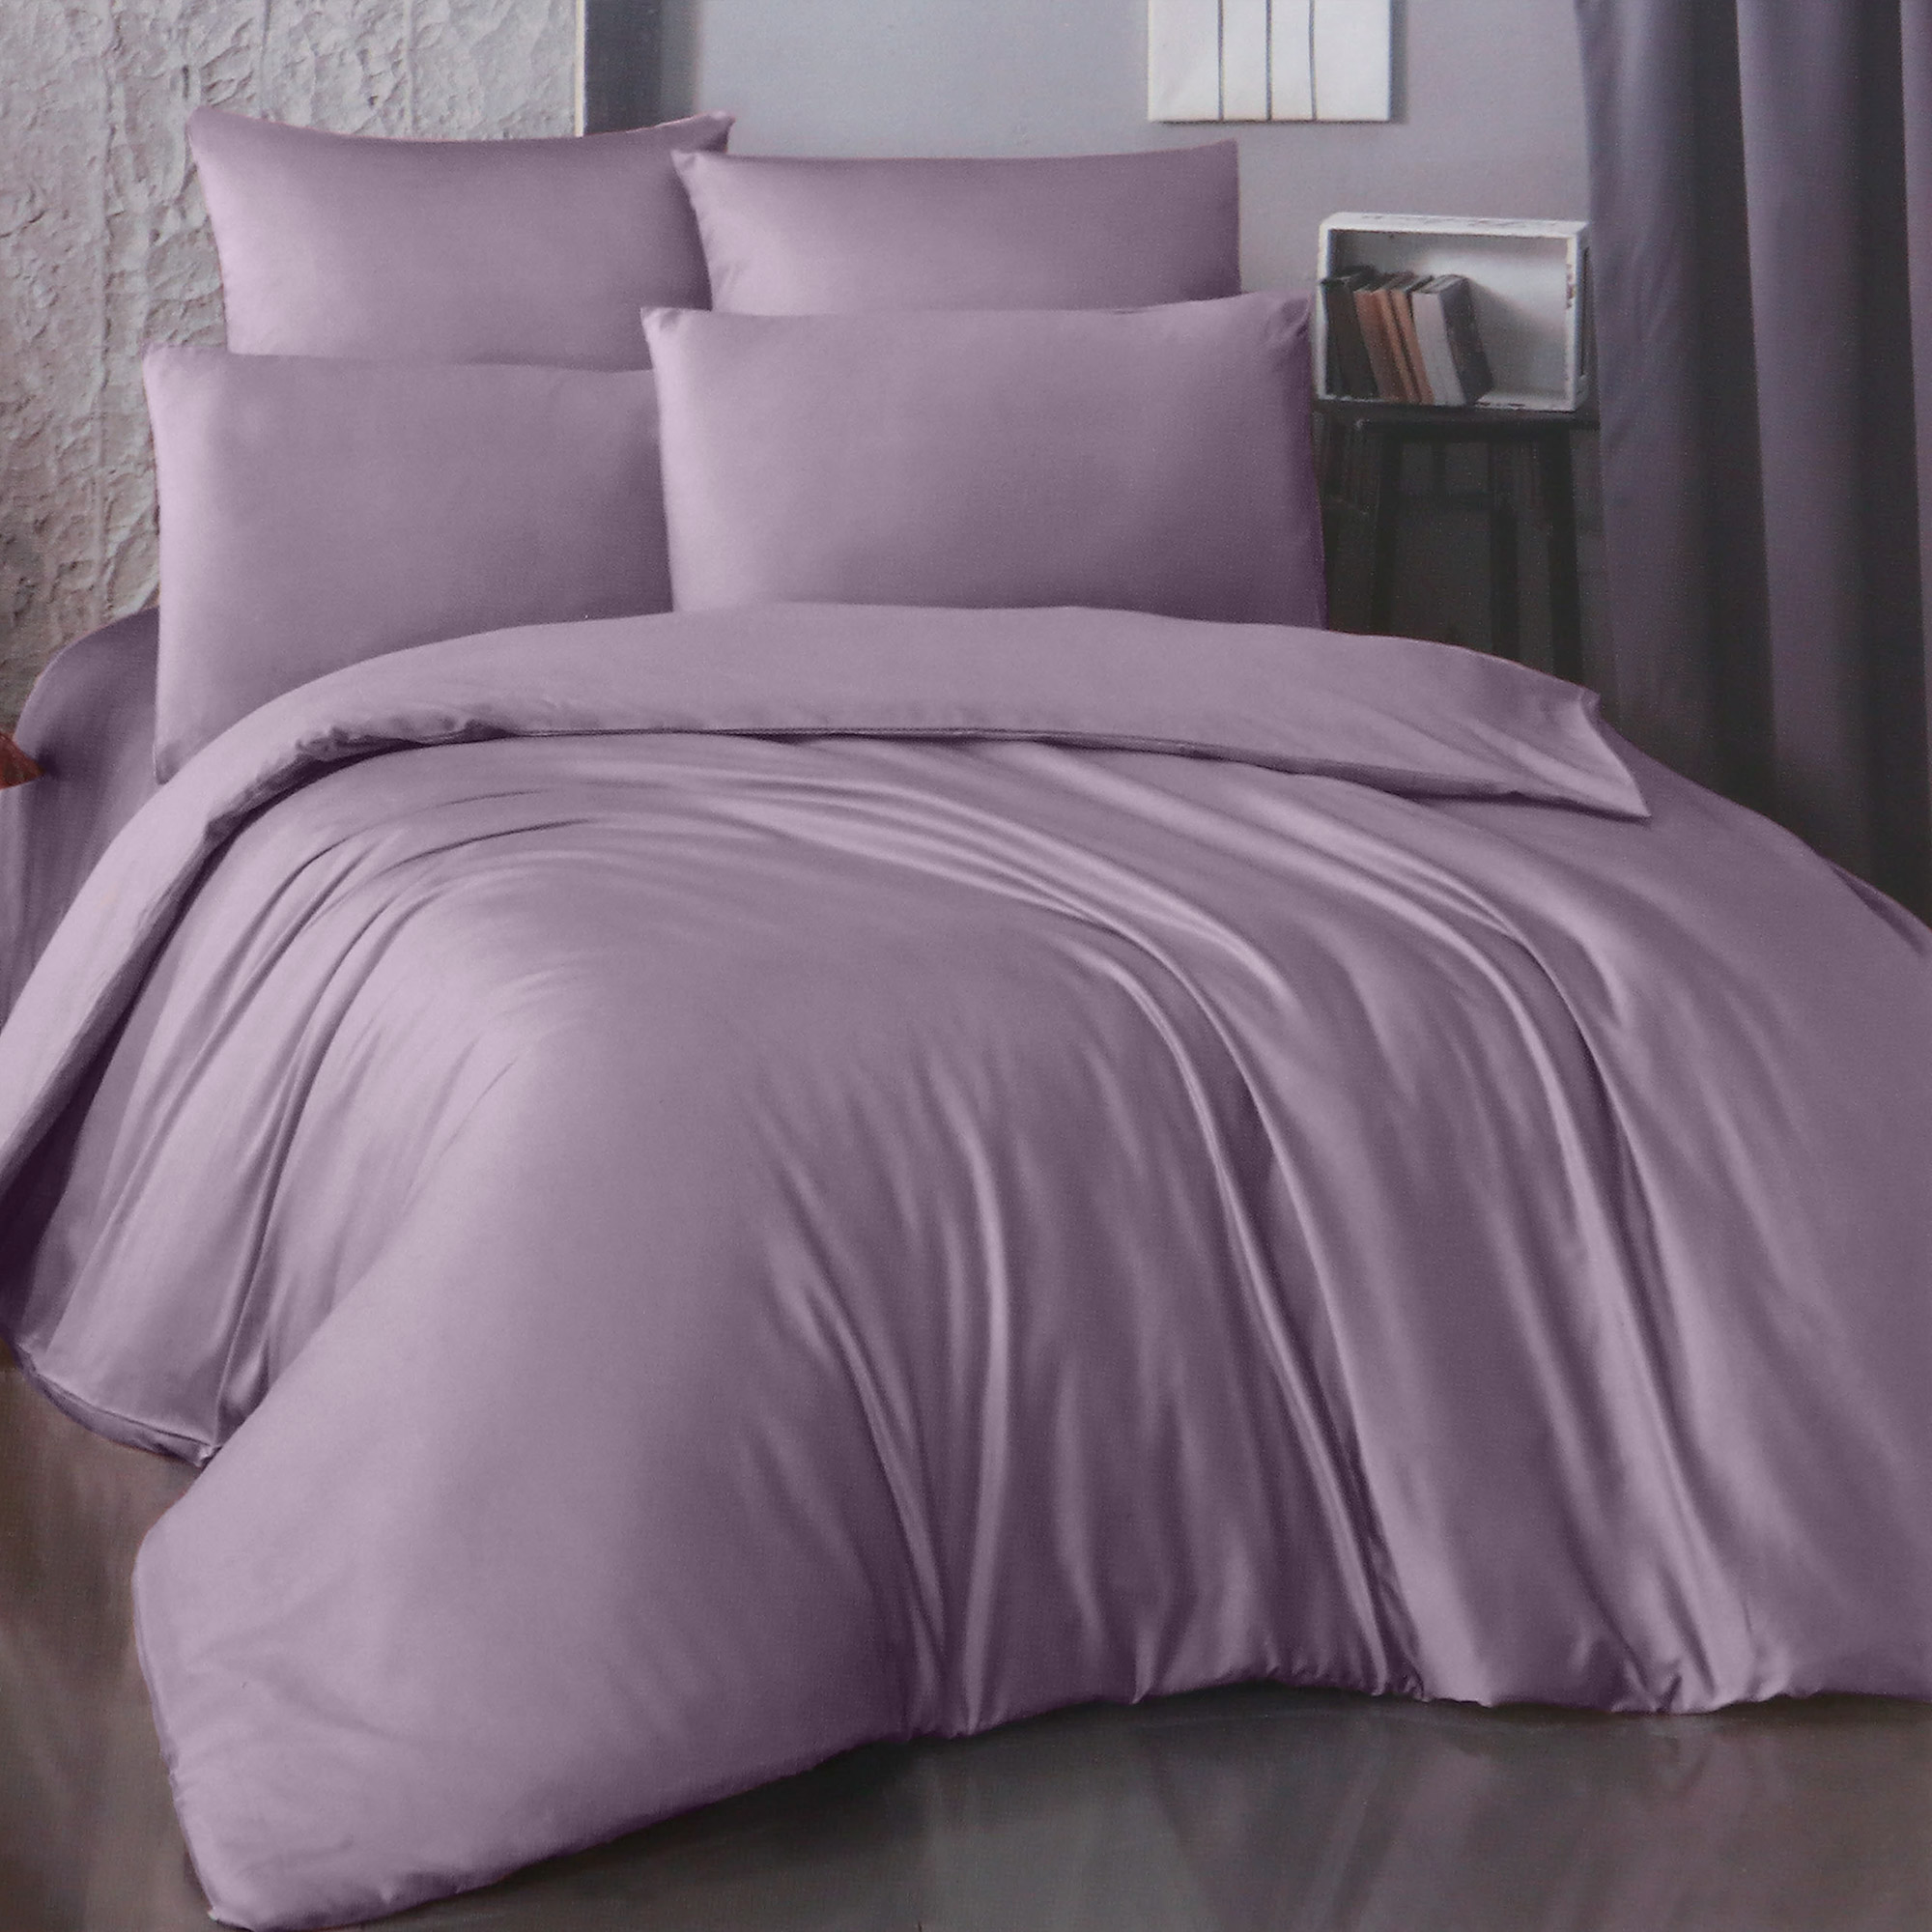 Комплект постельного белья La Besse Ранфорс сливовый Кинг сайз, размер Кинг сайз - фото 1